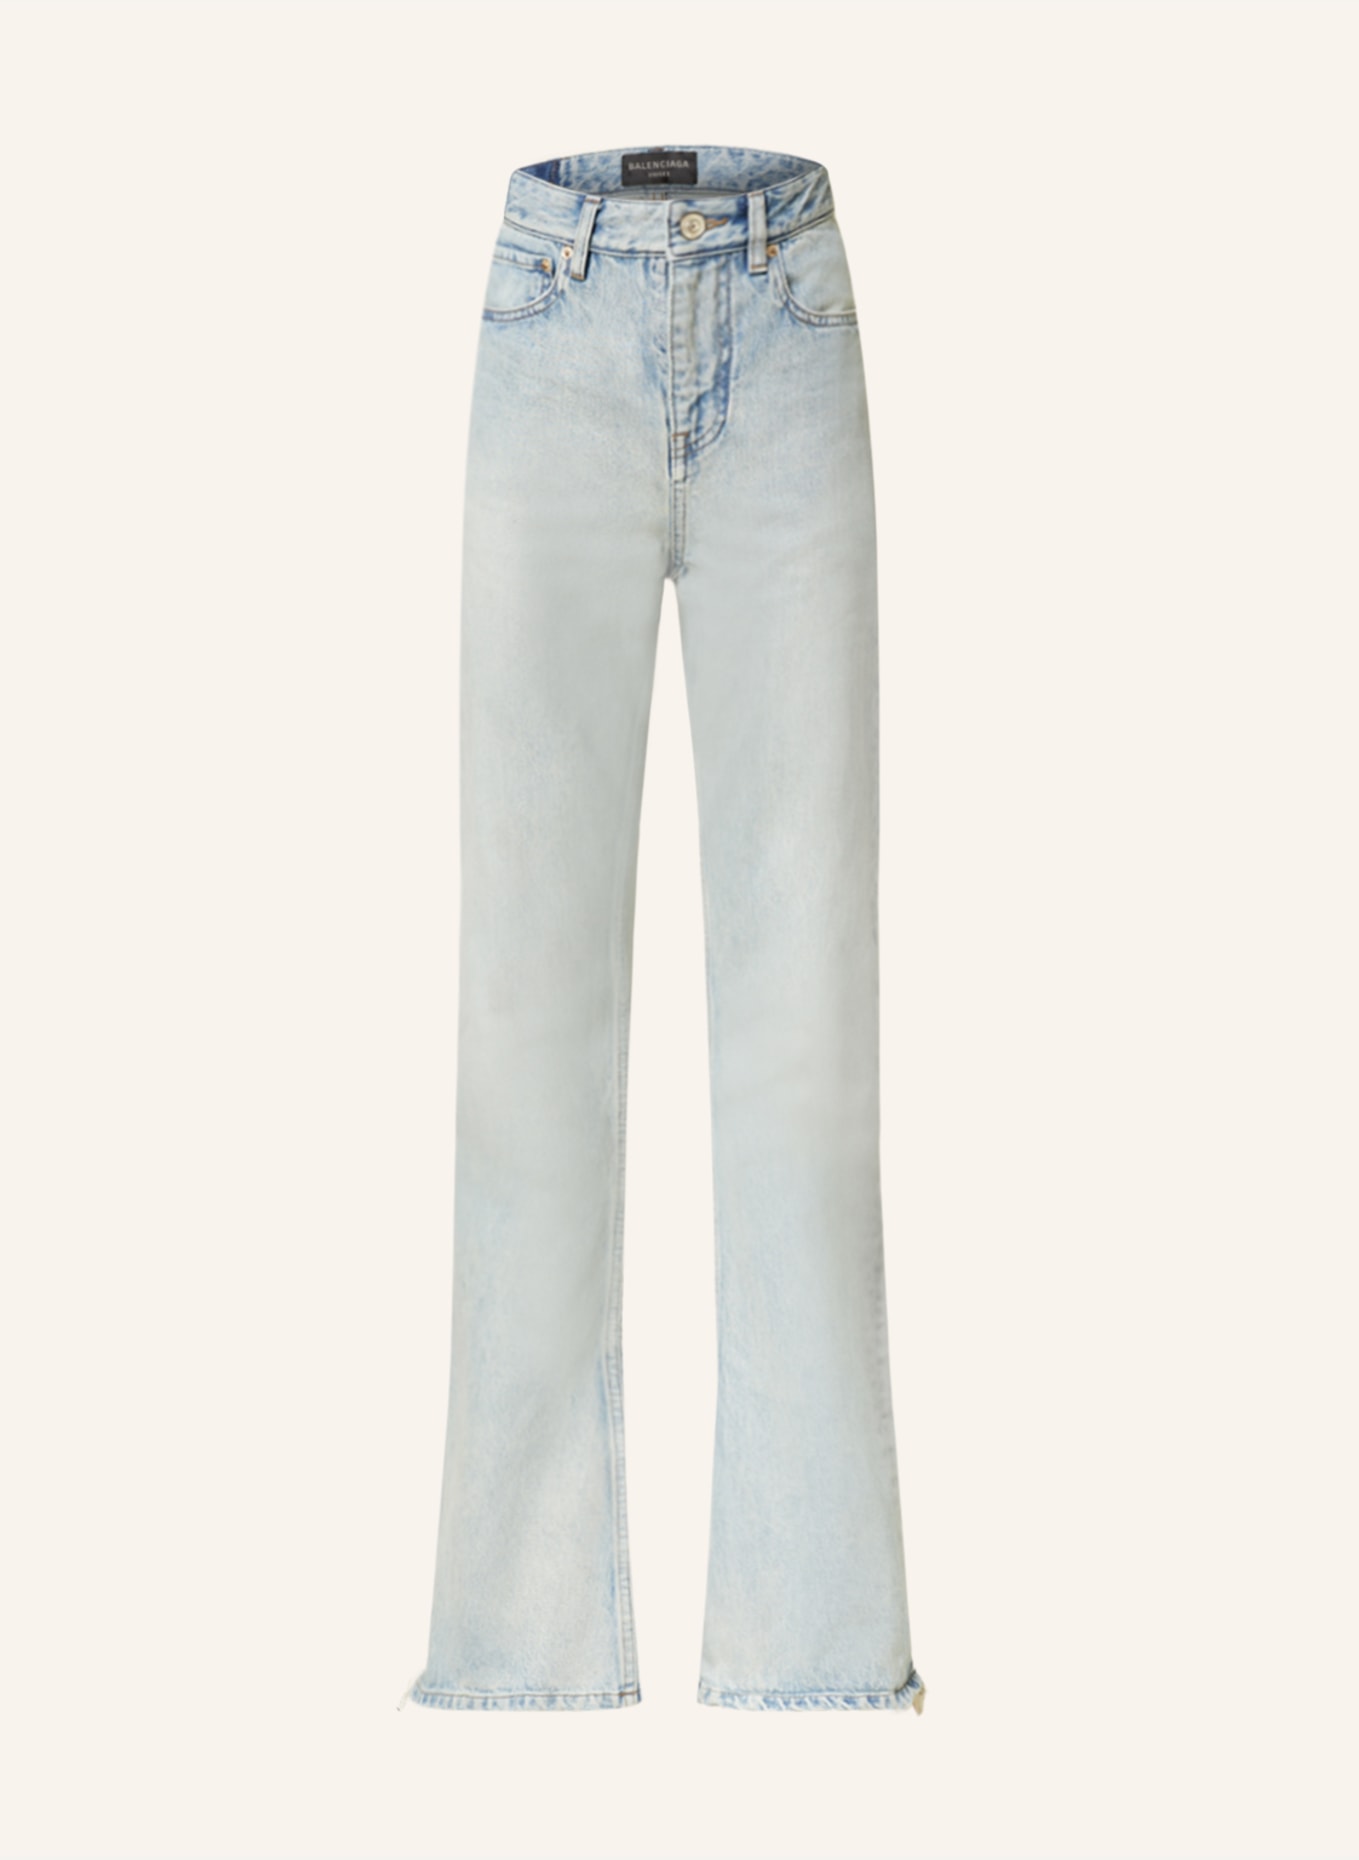 BALENCIAGA Bootcut Jeans, Farbe: 4016 DIRTY BLUE (Bild 1)